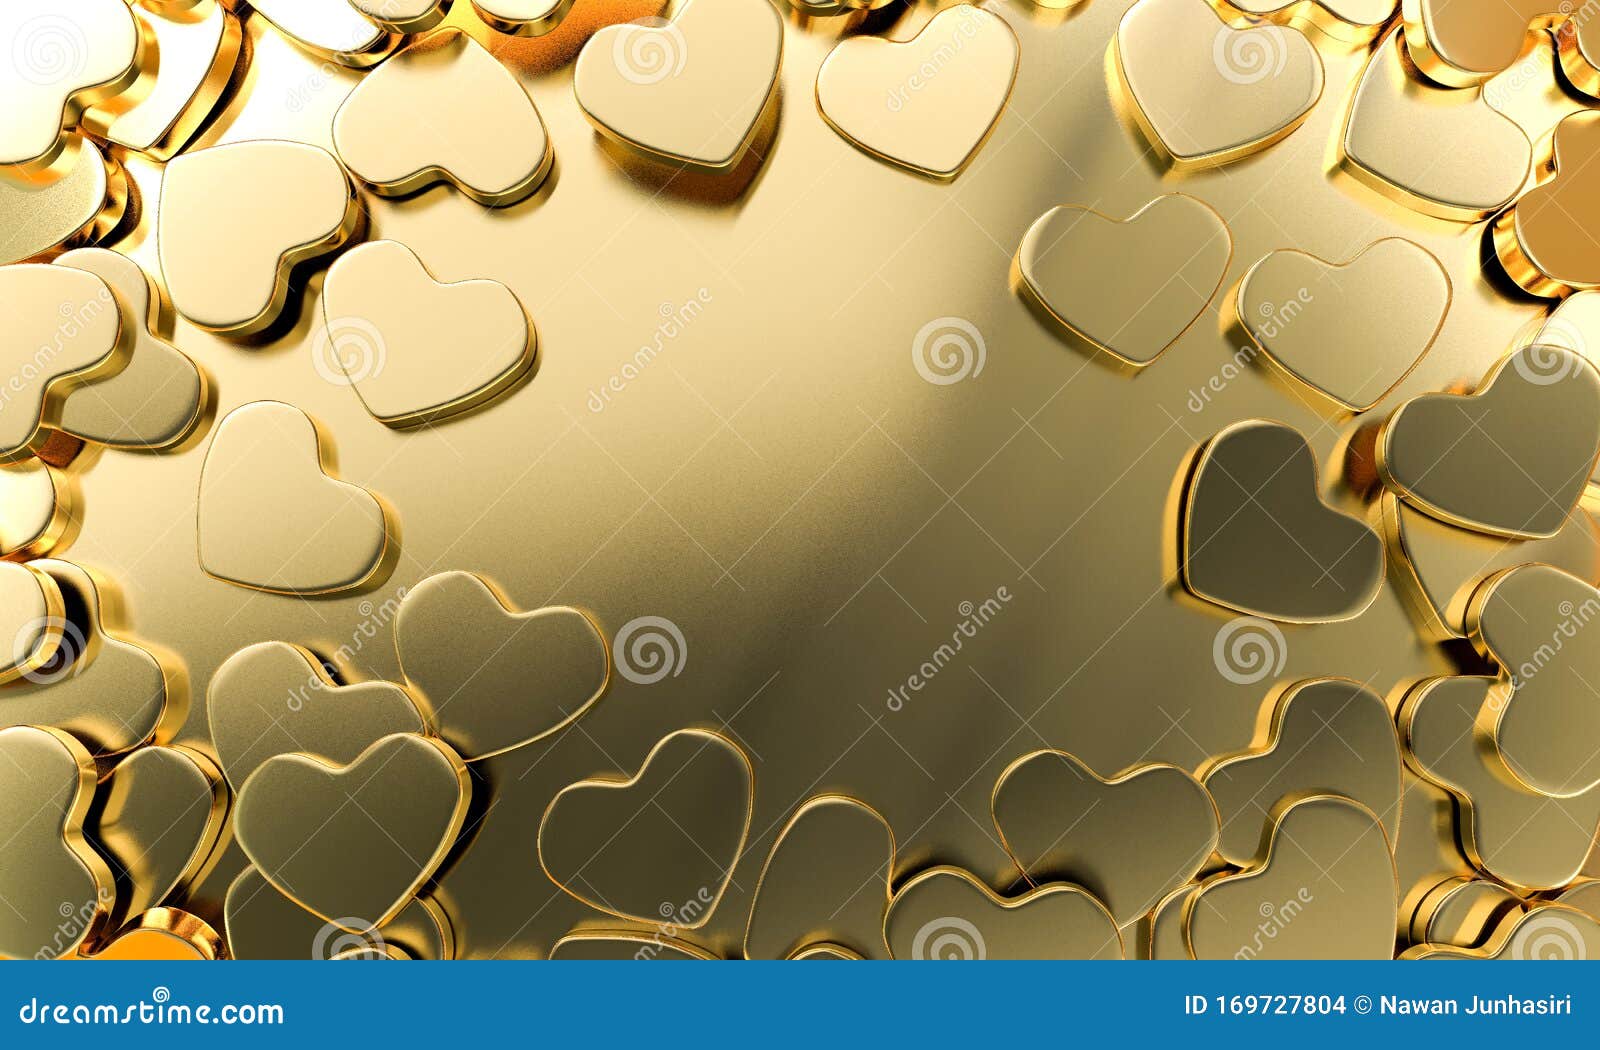 HD golden heart wallpapers  Peakpx